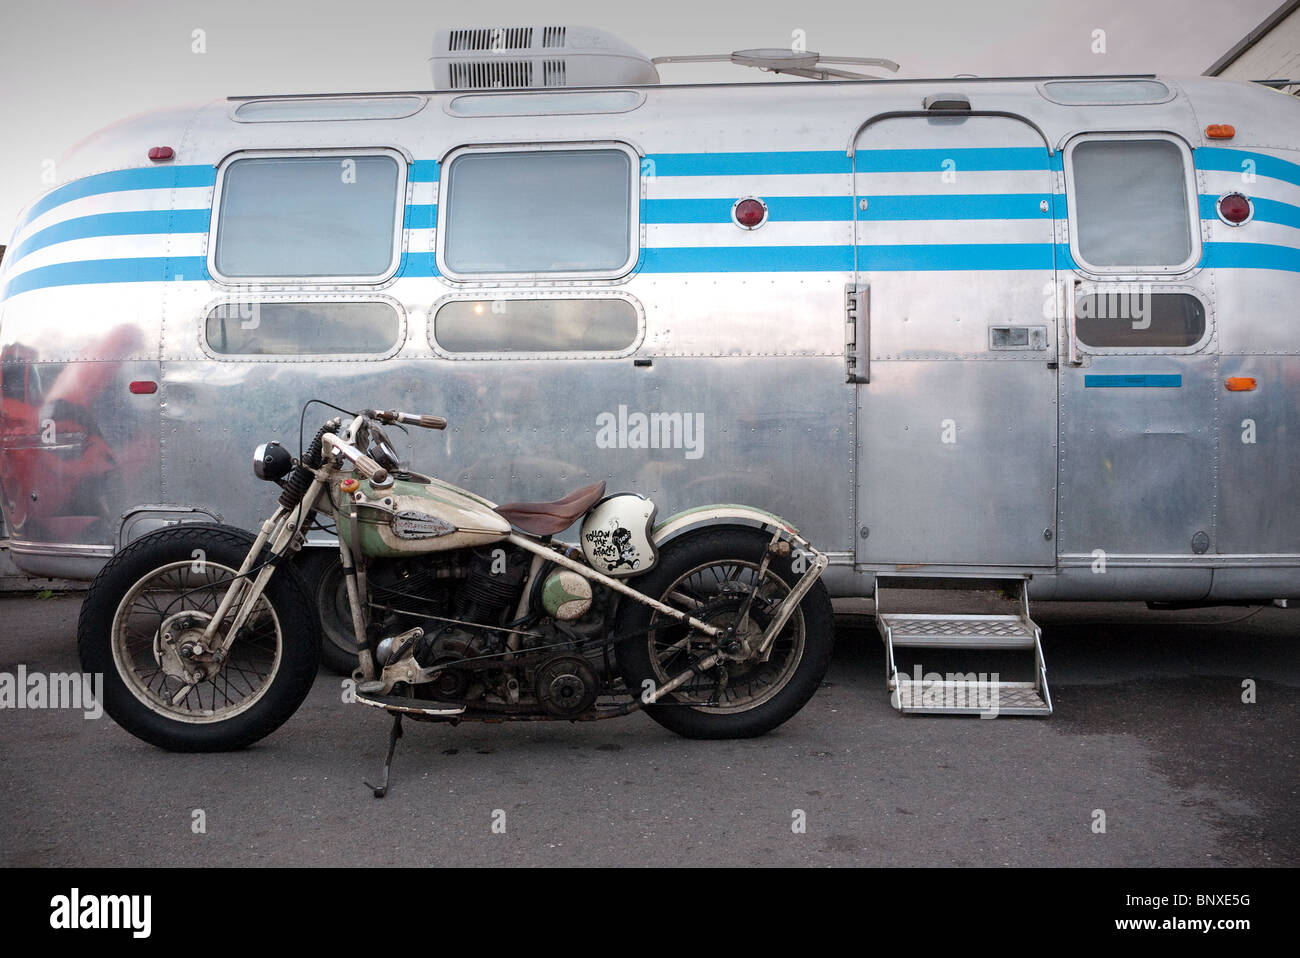 Vieille moto Harley Davidson parqué par une caravane Airstream Ace Cafe London UK Banque D'Images